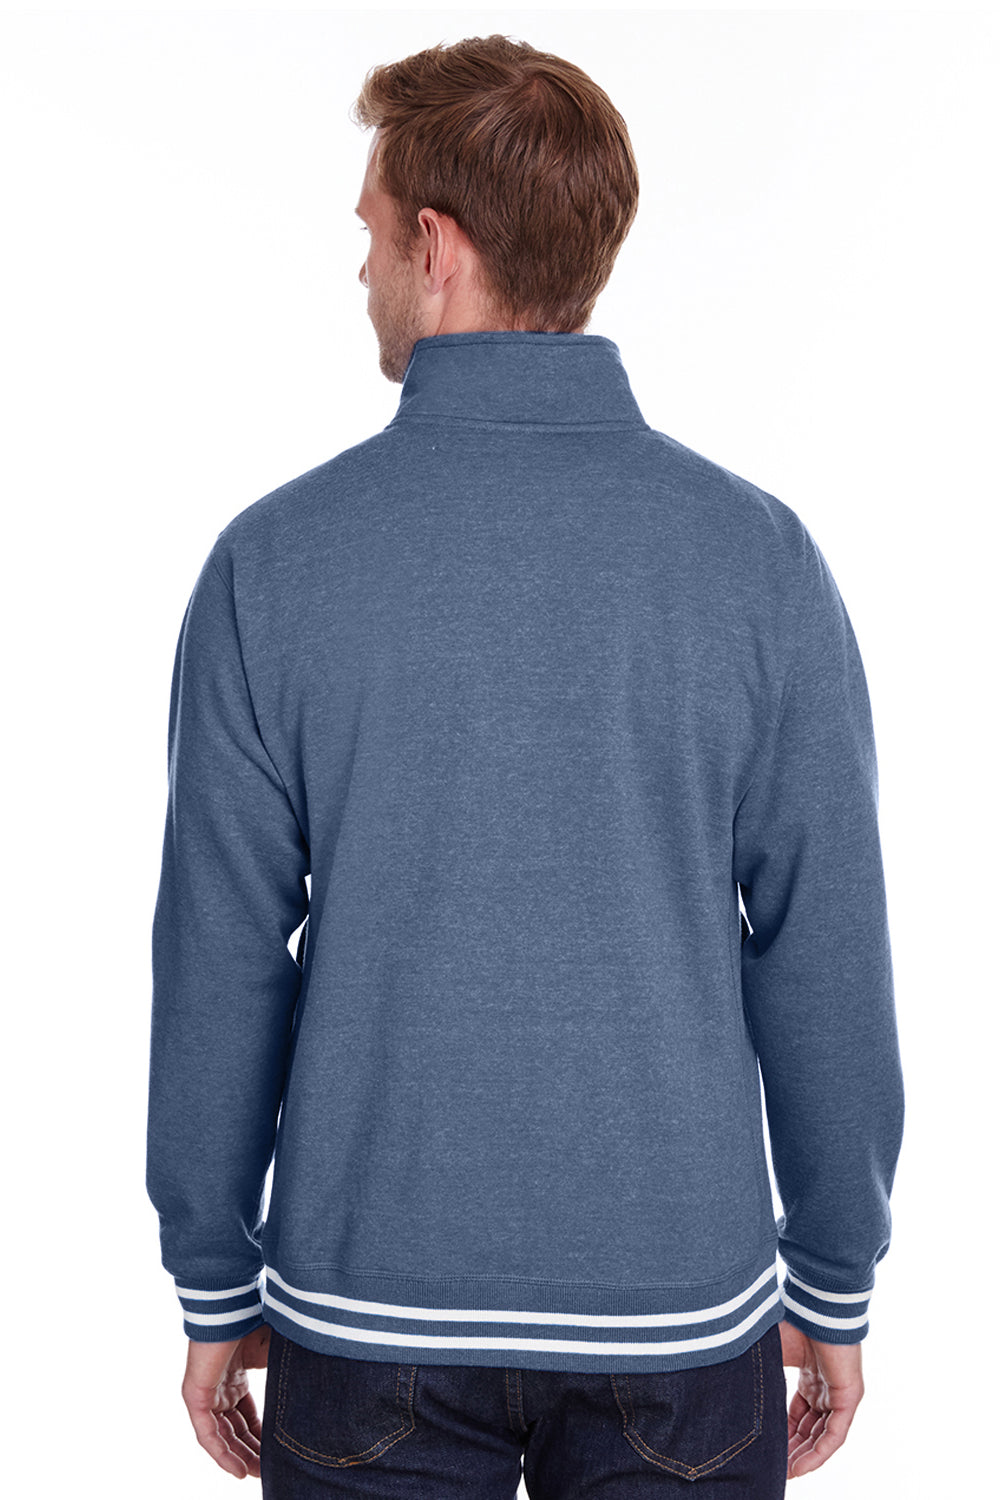 J America JA8650 Mens Relay Fleece 1/4 Zip Sweatshirt Navy Blue Back